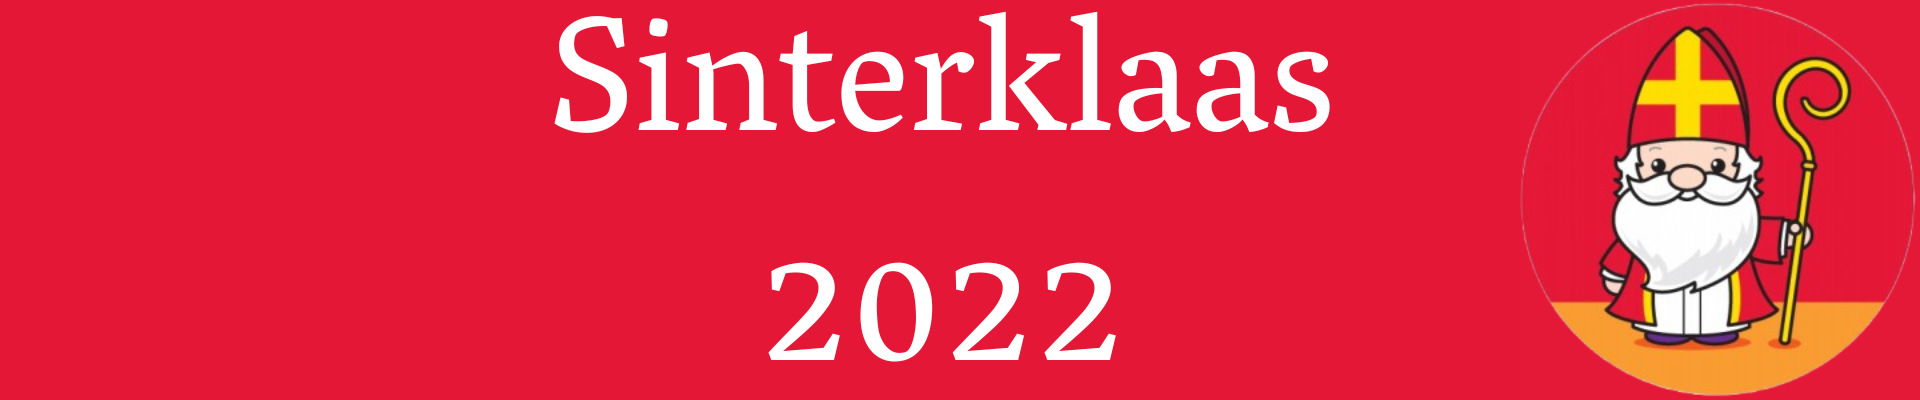 Sinterklaas 2022